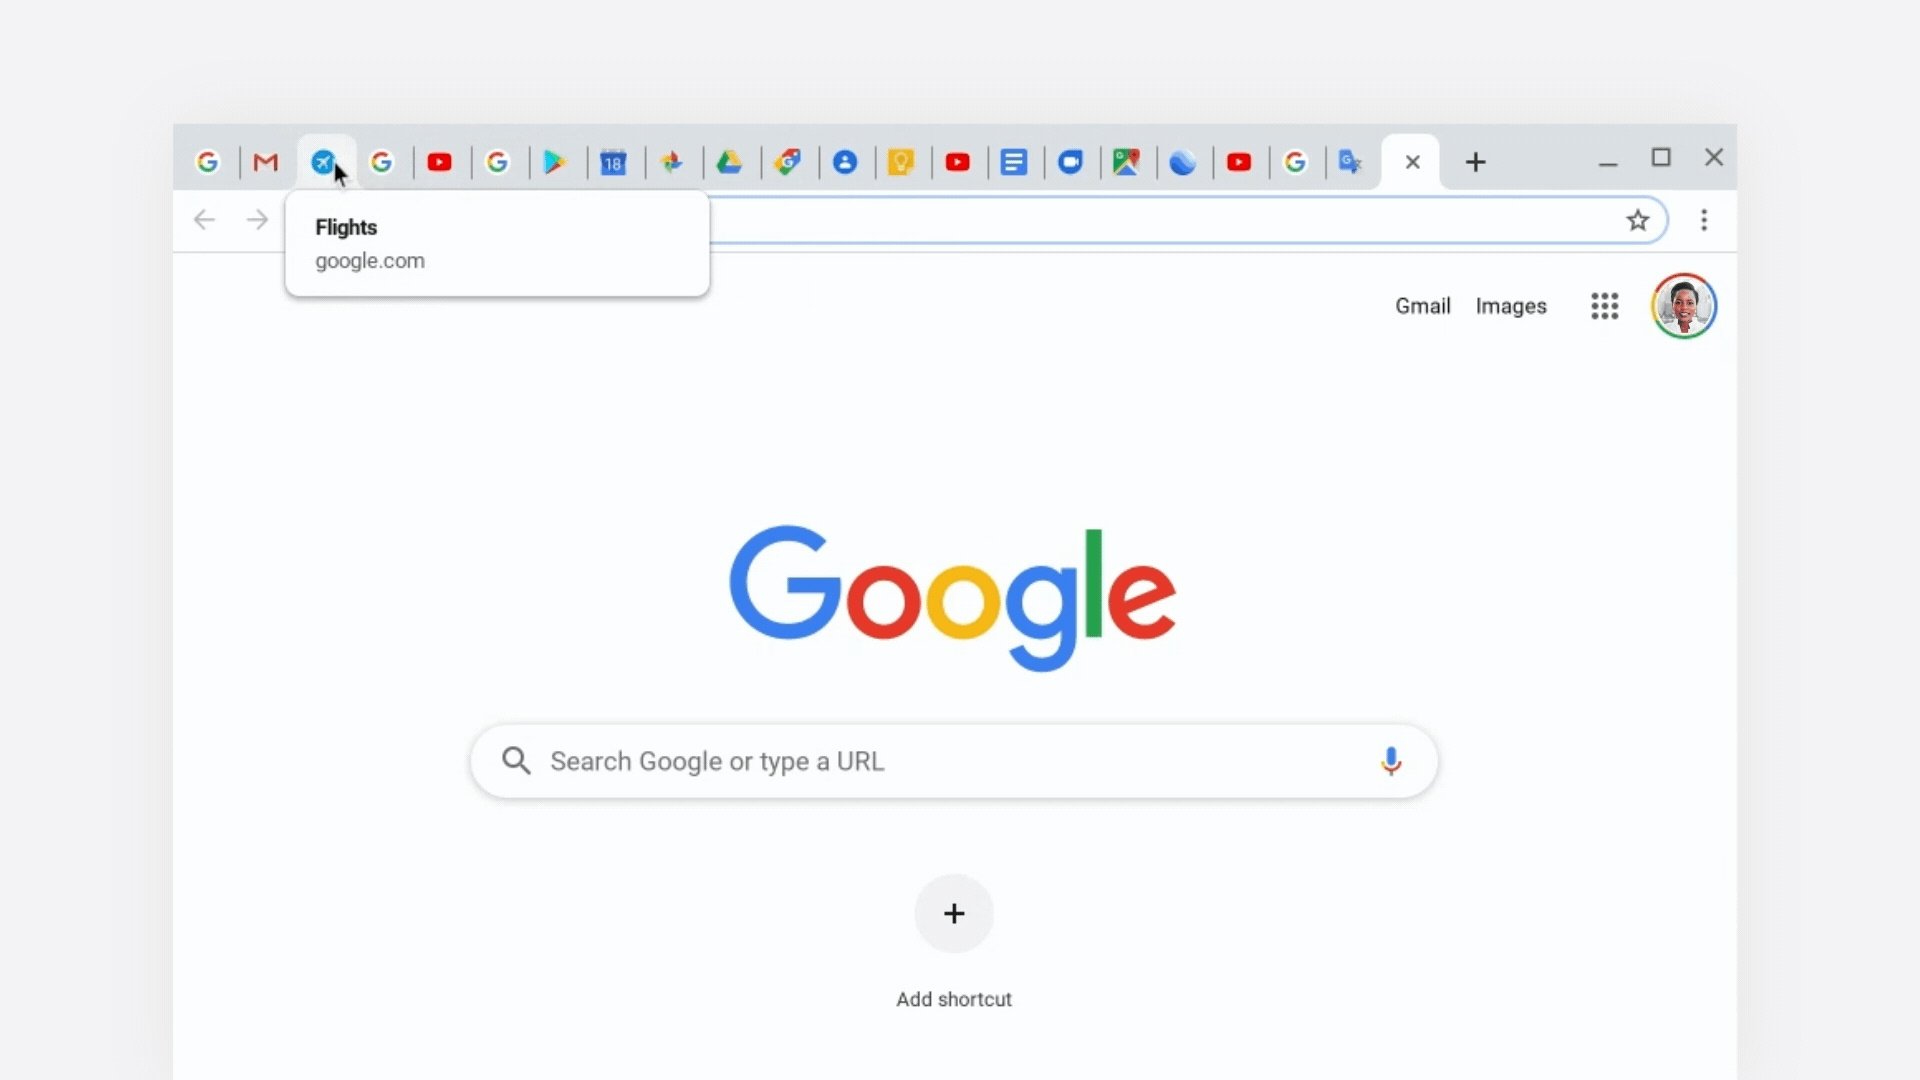 Google chrome